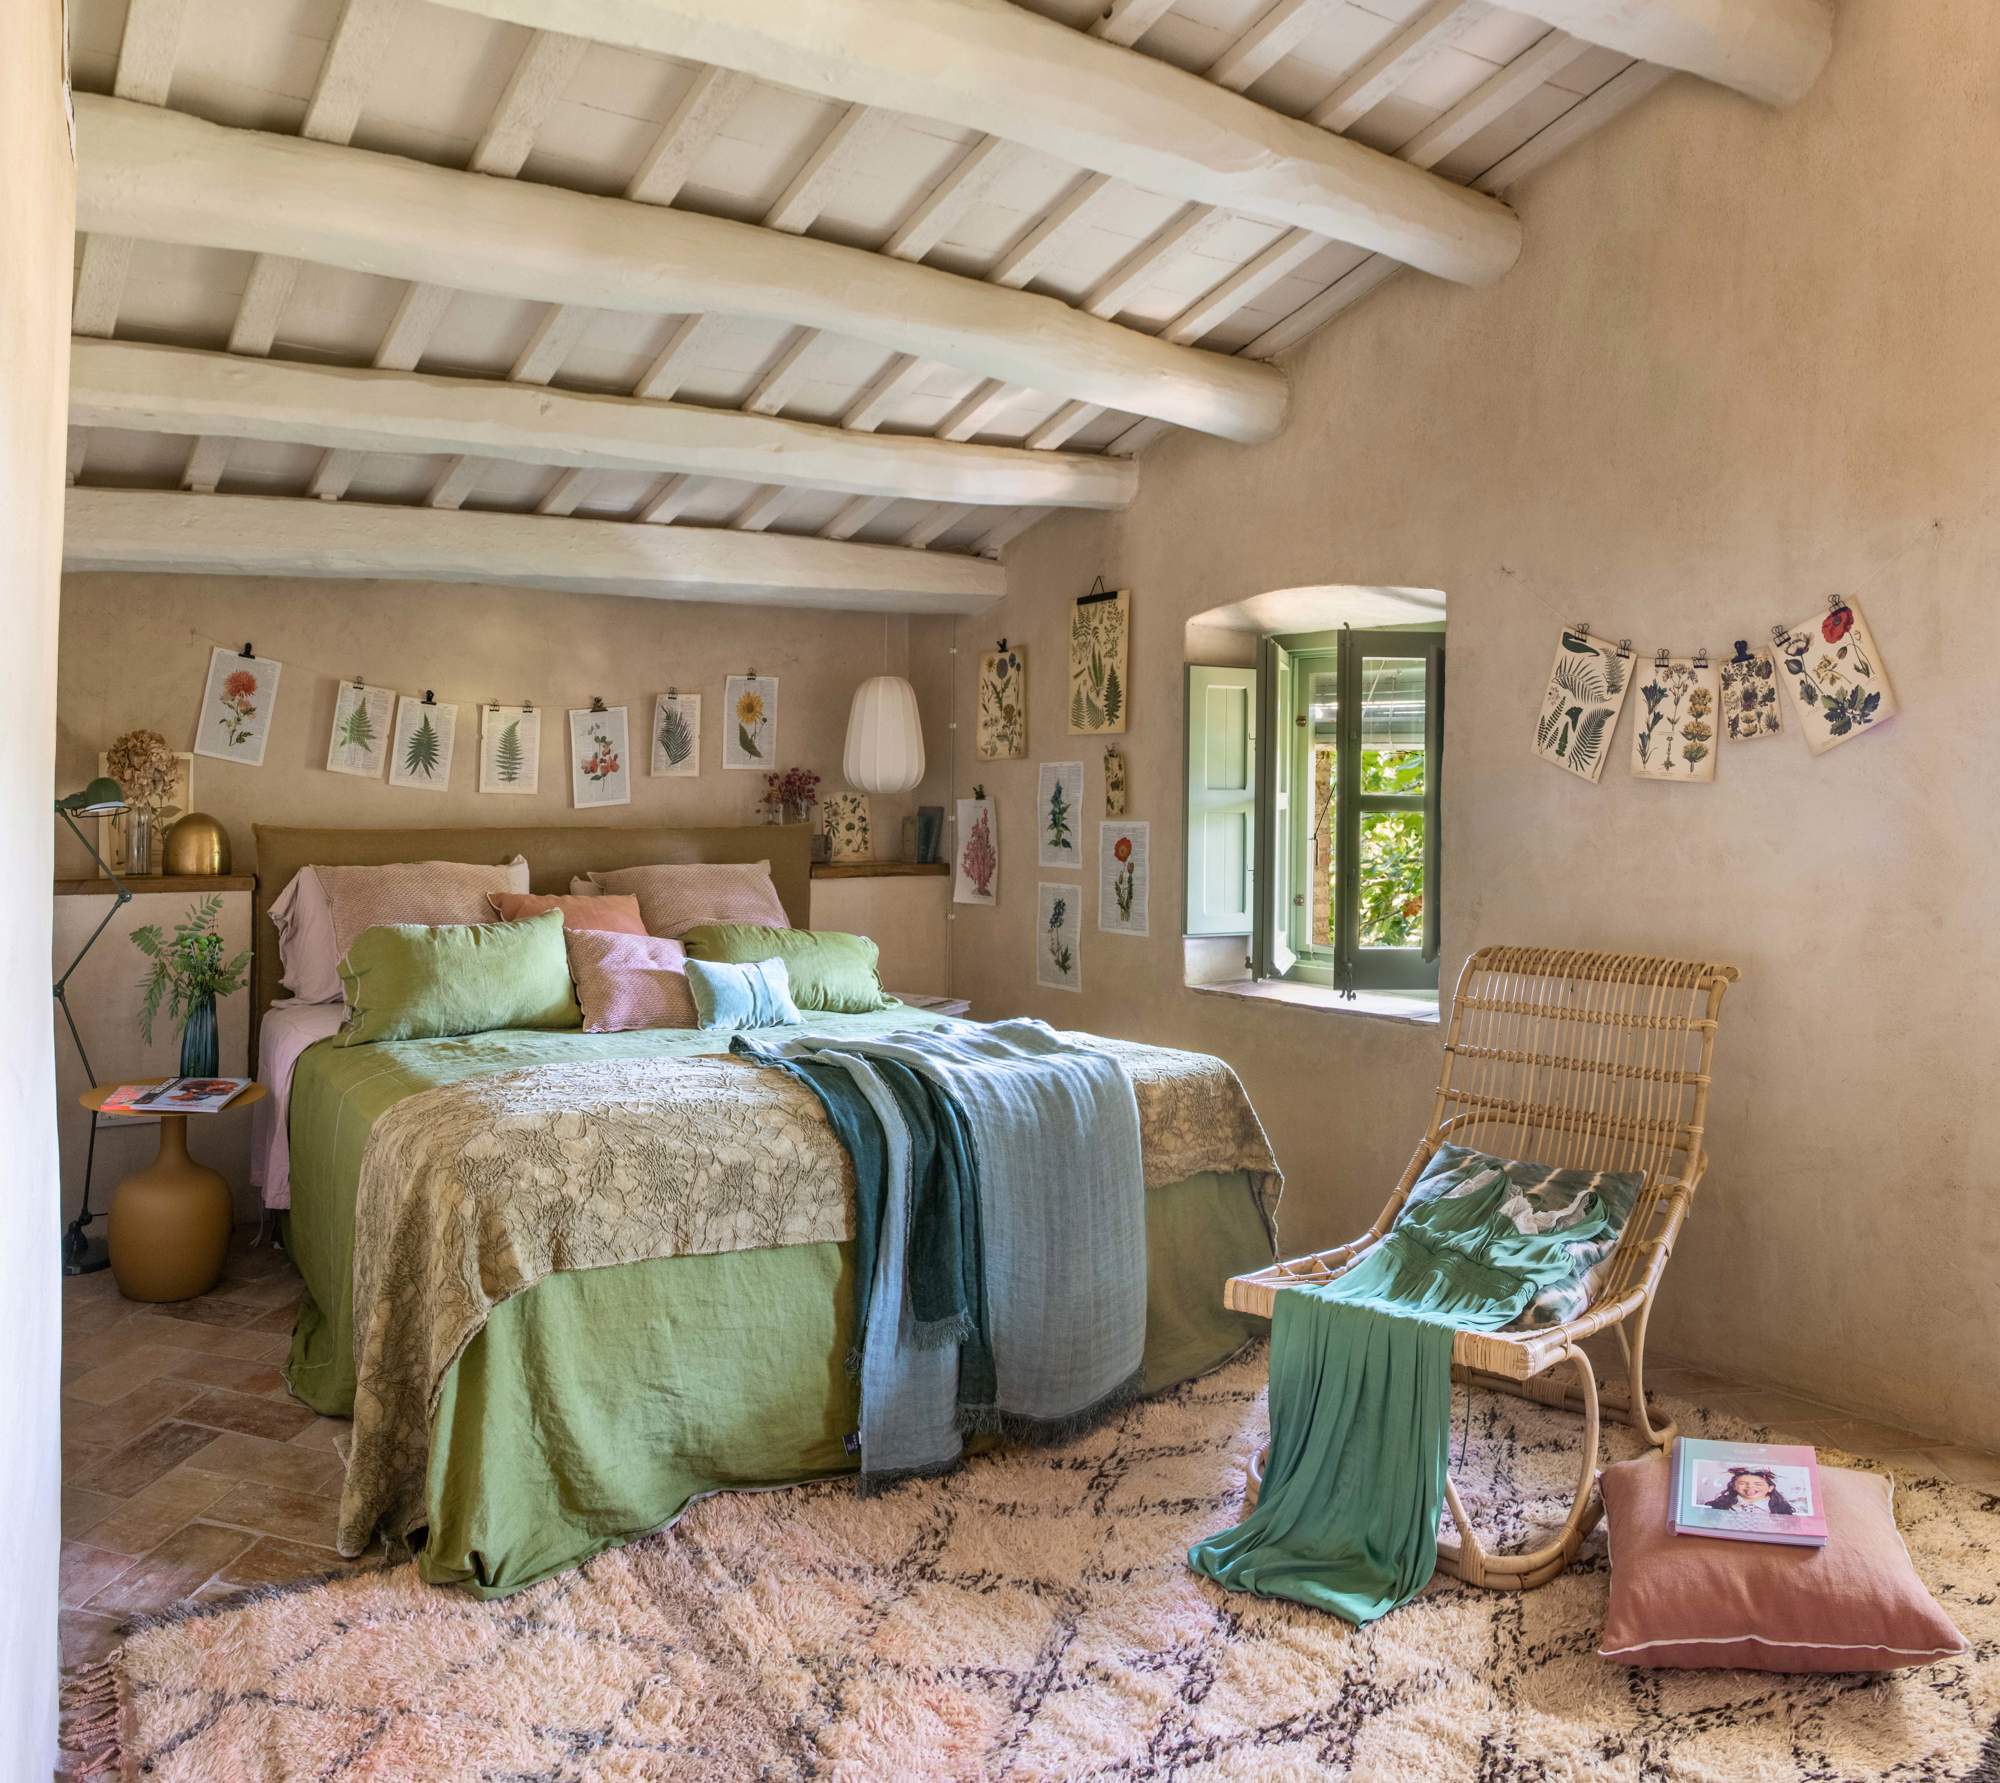 Dormitorio en tonos empolvados con vigas de madera en techo.